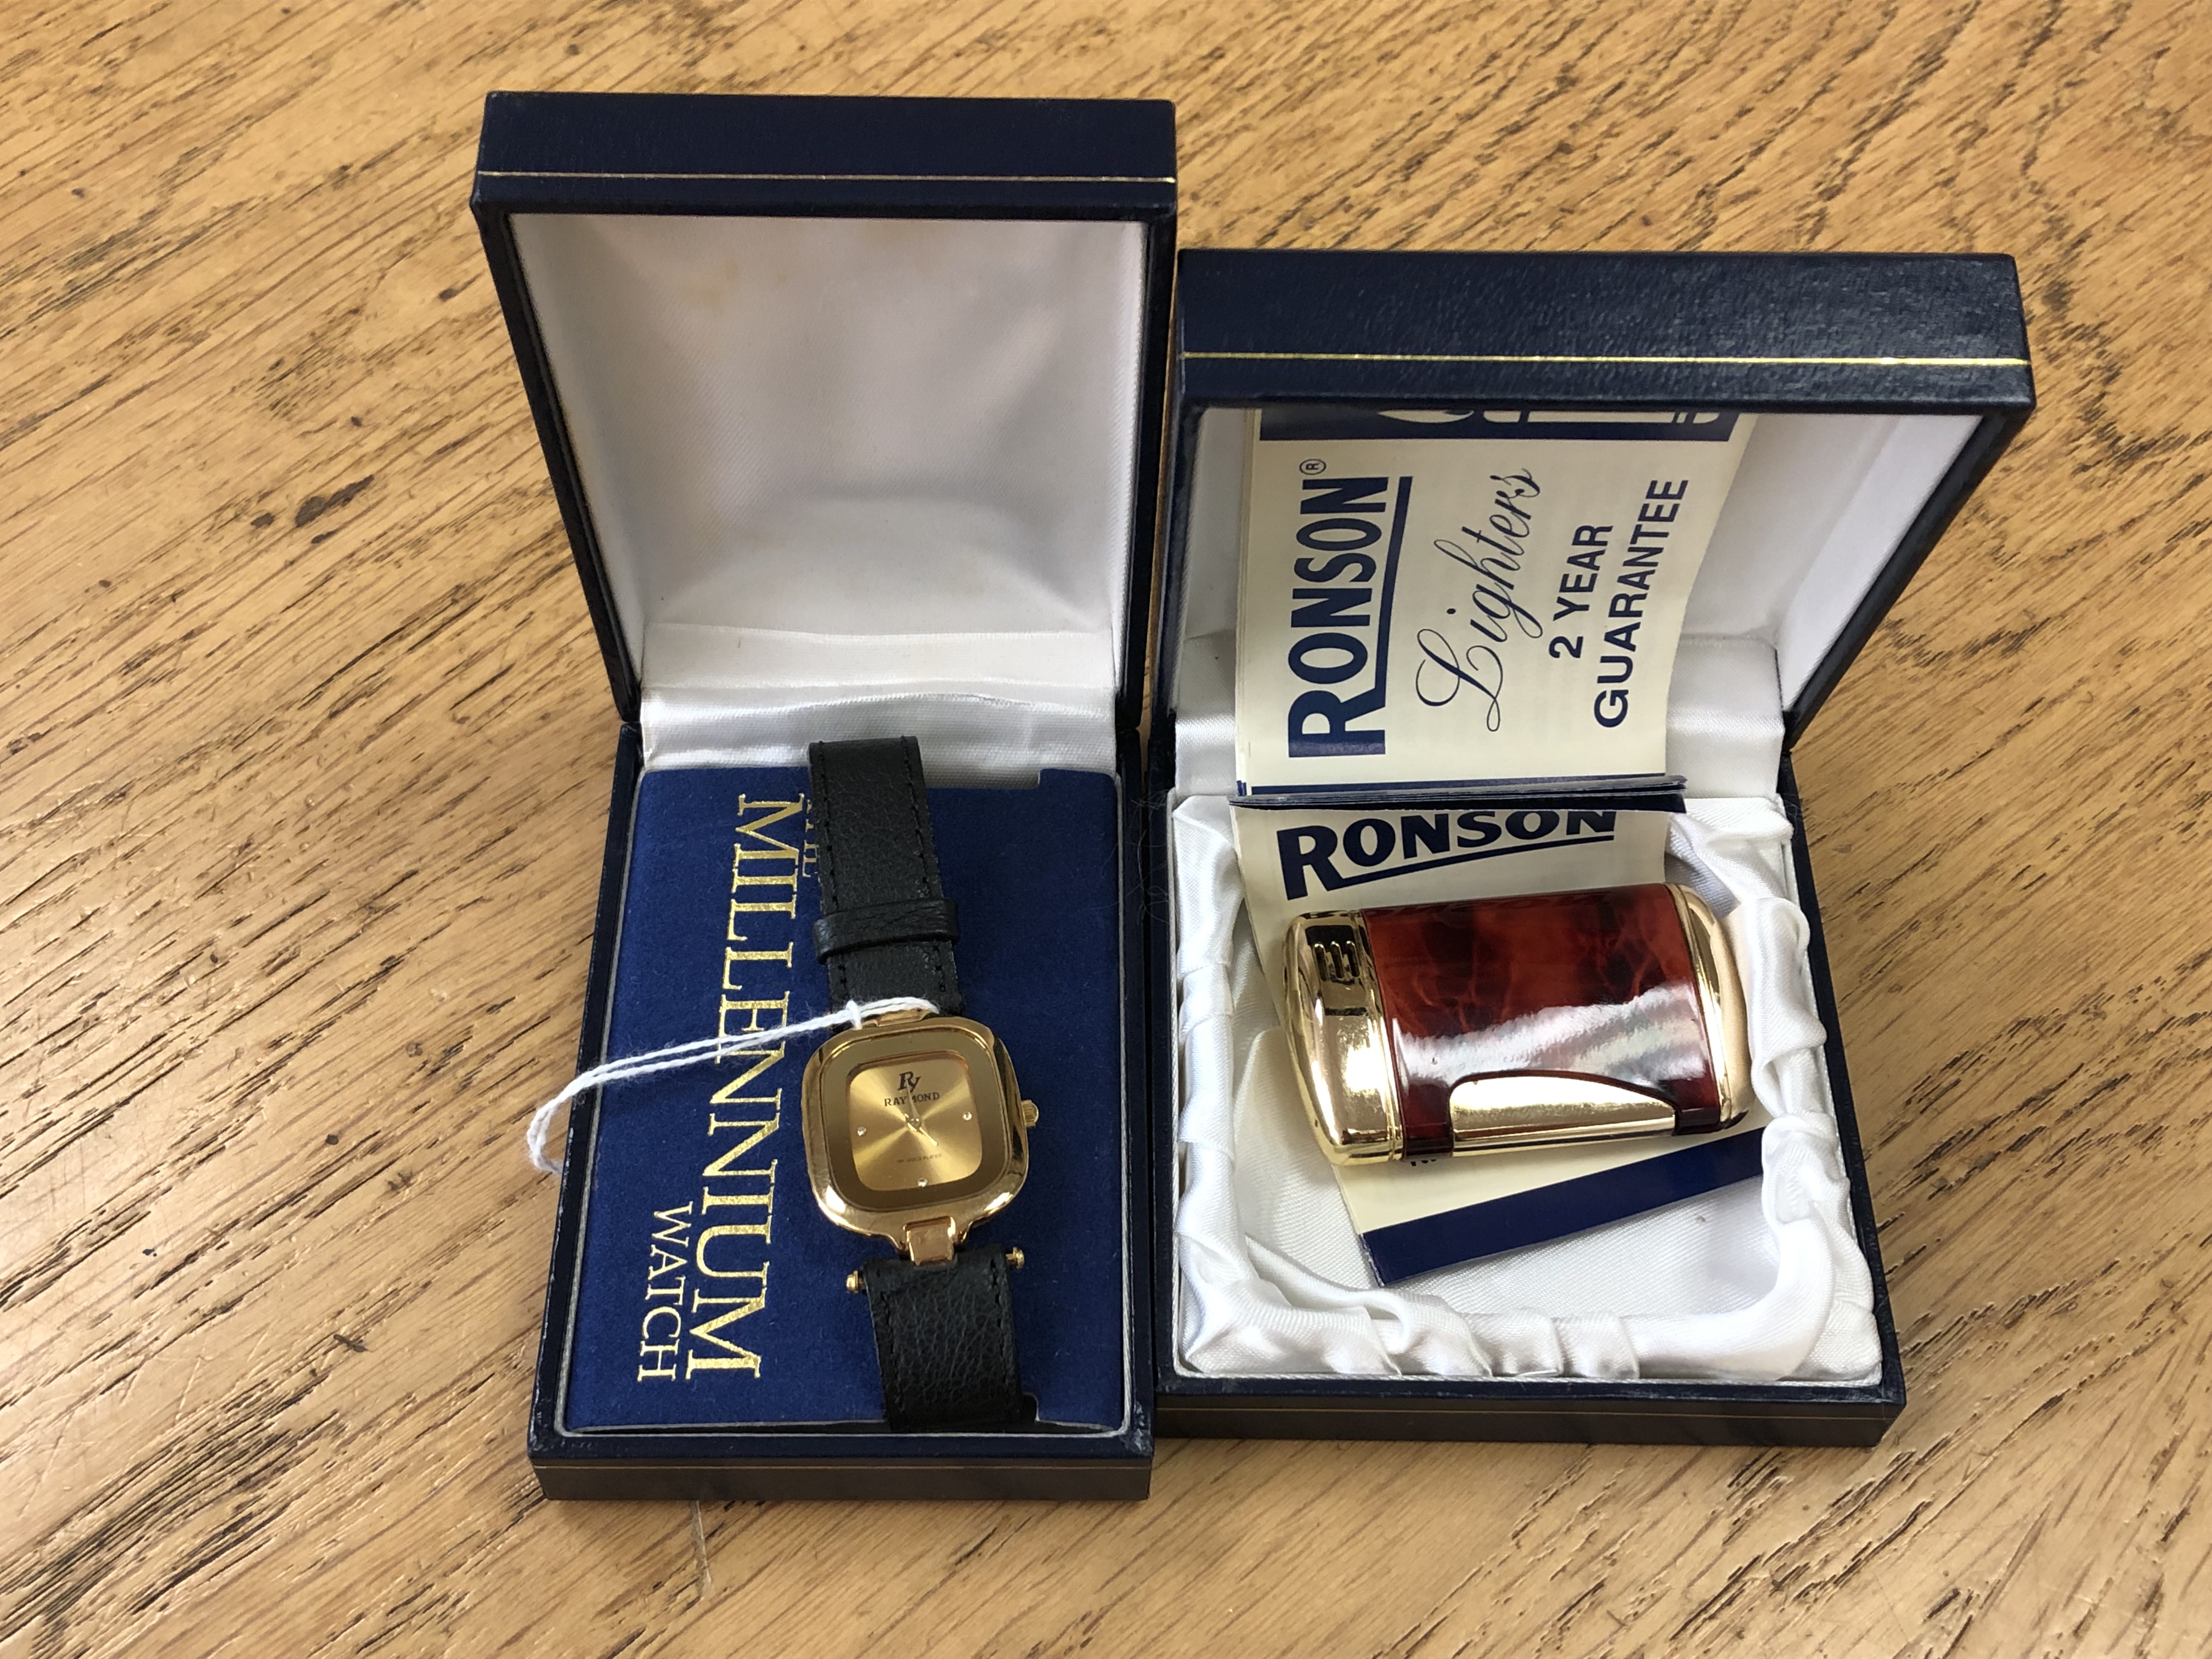 A Ronson gilt and tortoiseshell-effect cigarette lighter (boxed),